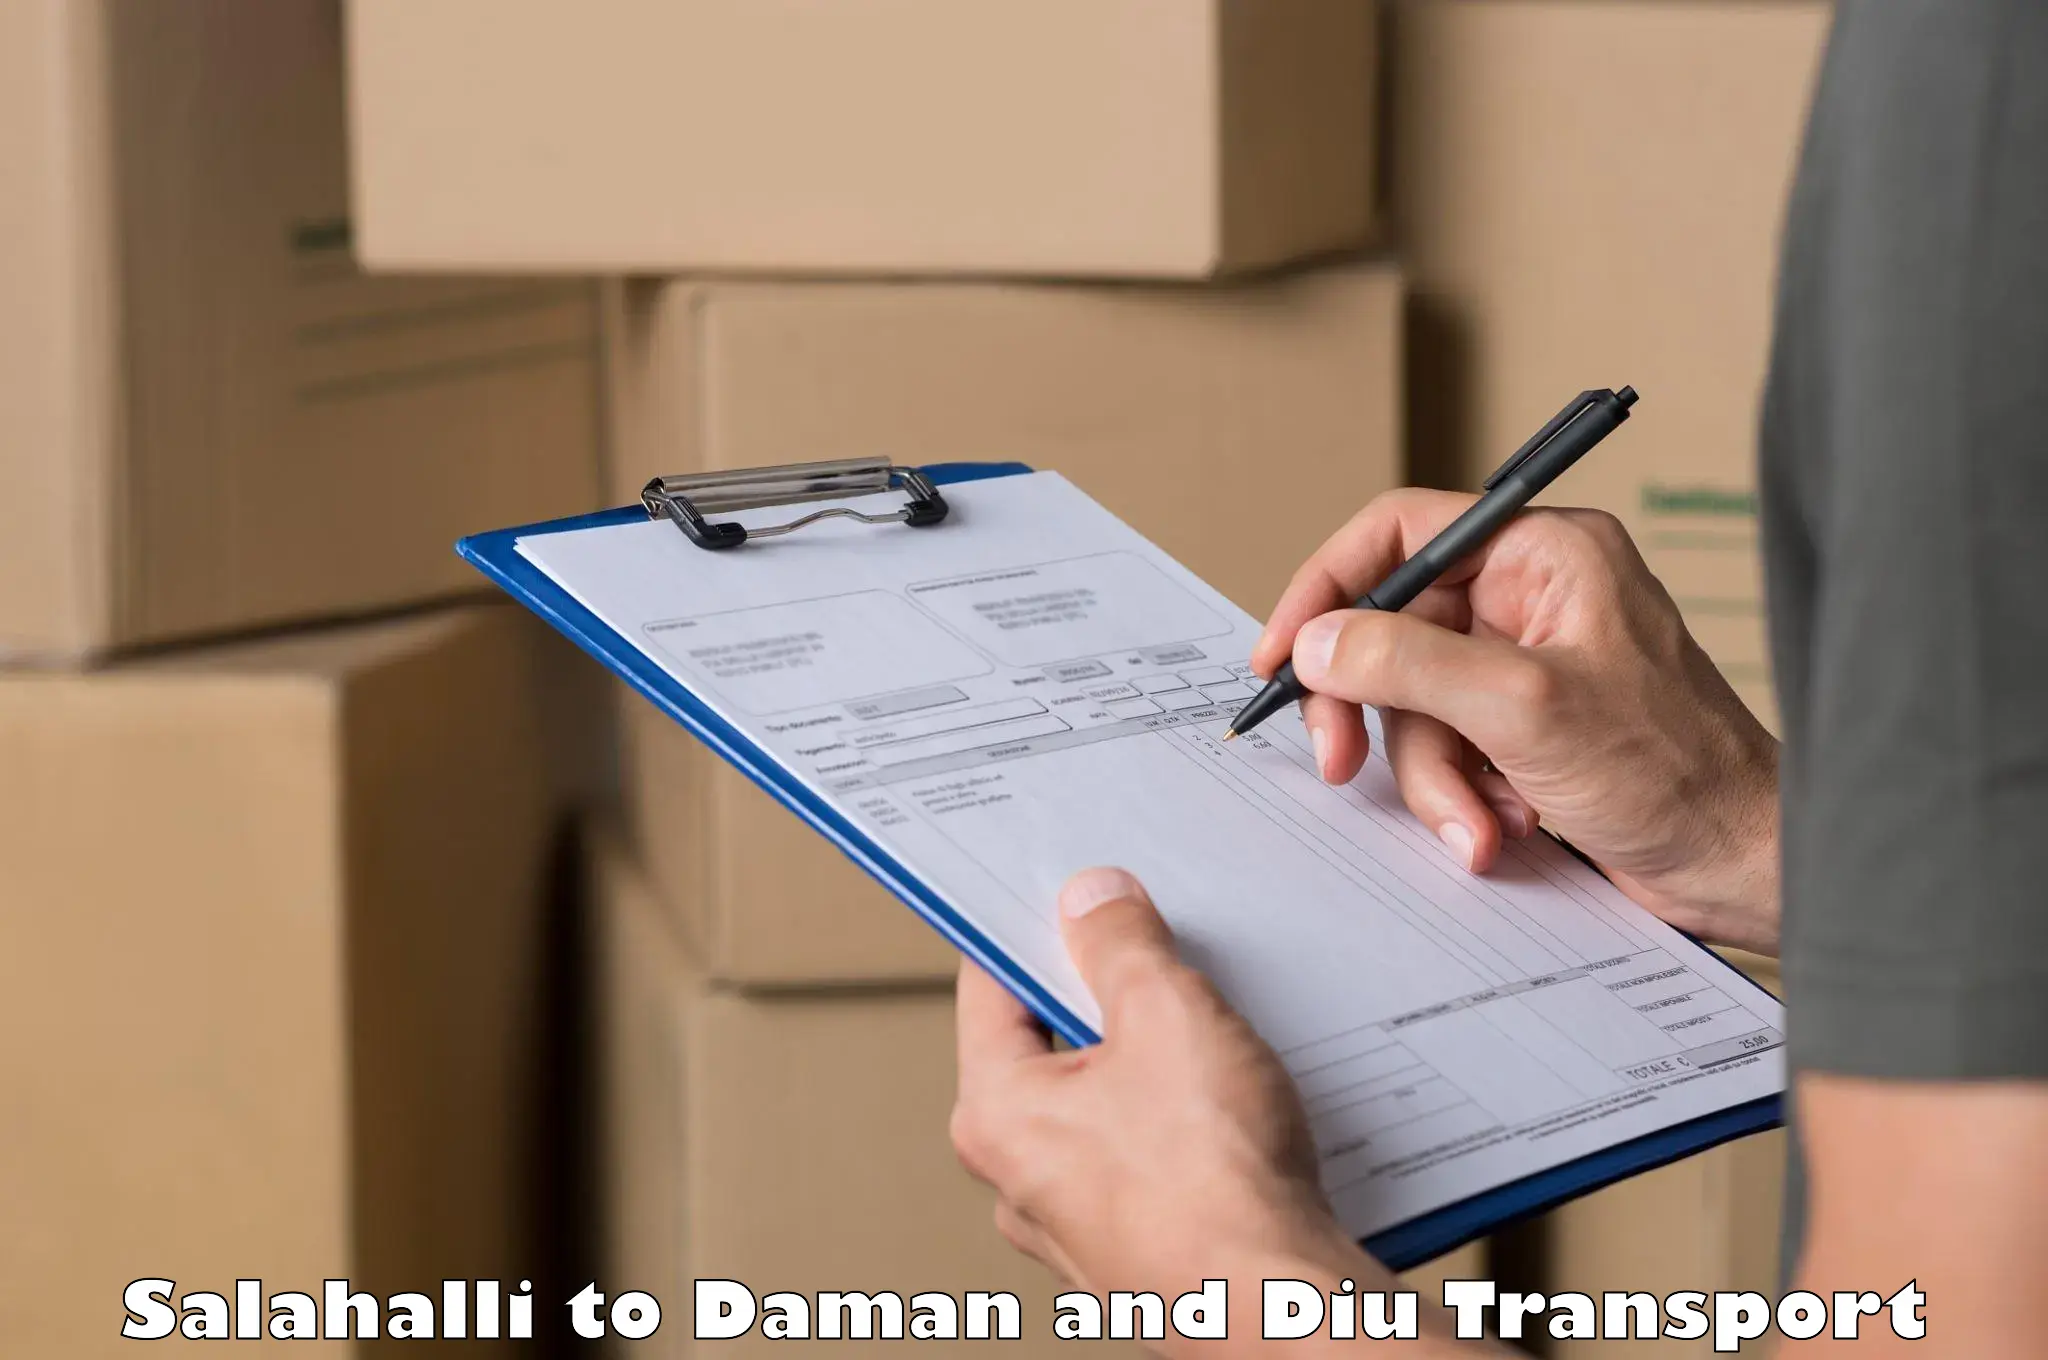 Online transport booking Salahalli to Daman and Diu